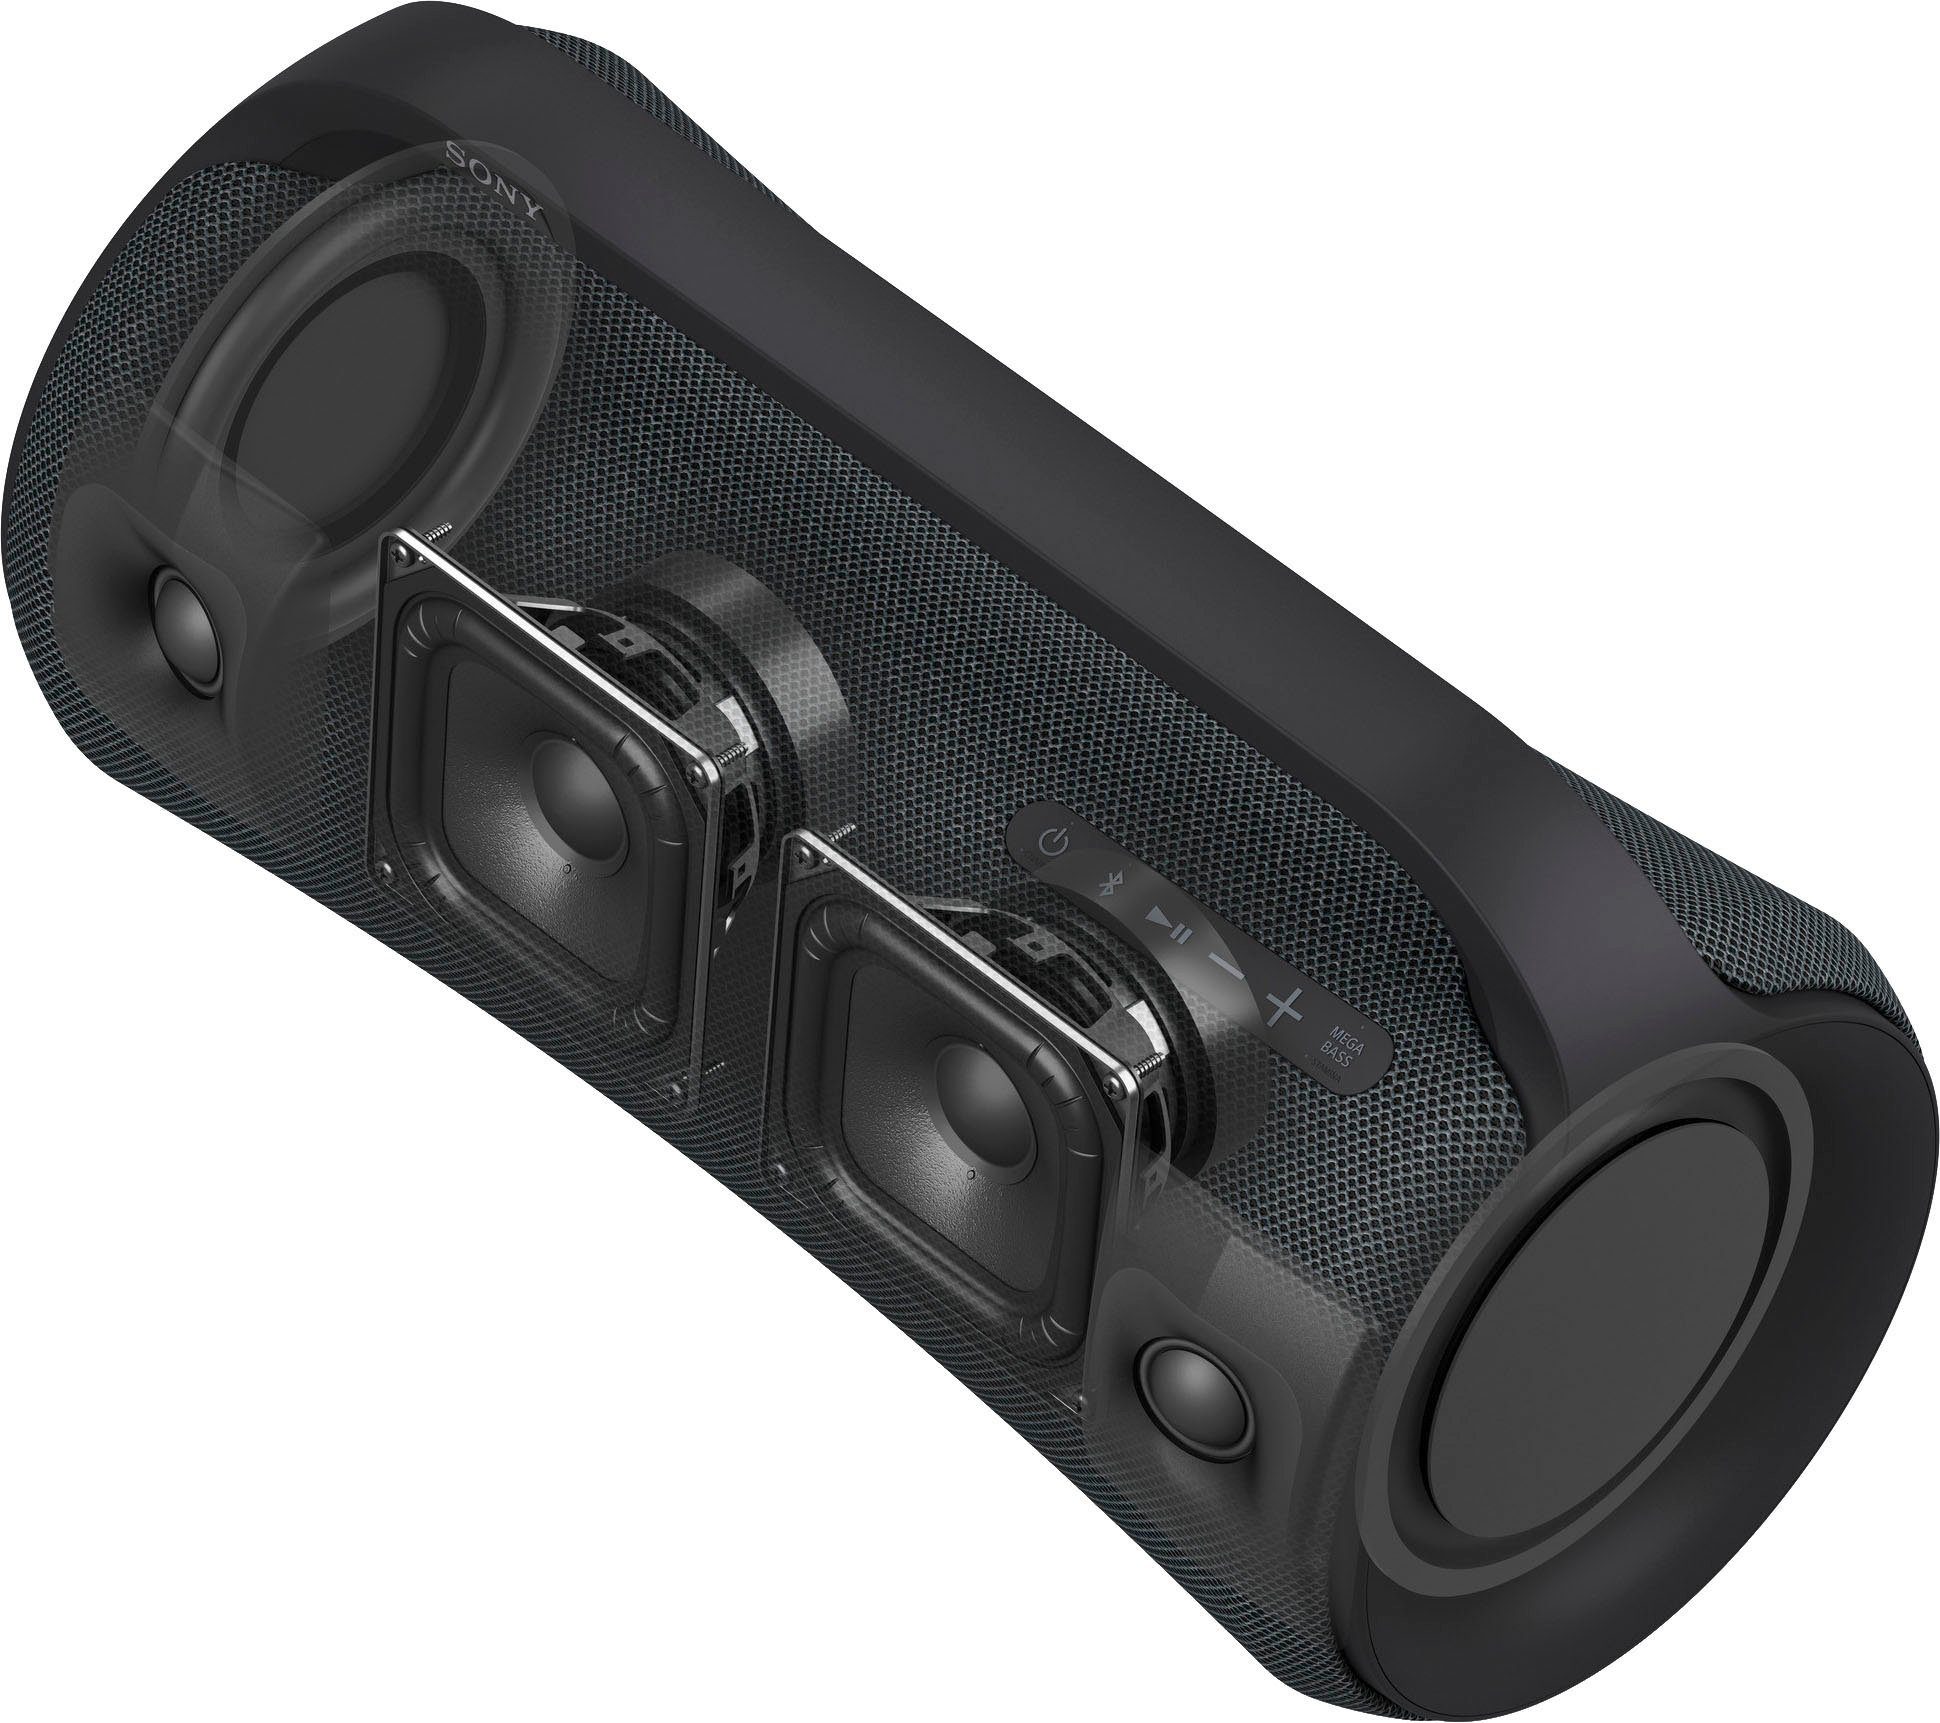 Sony Bluetooth-Lautsprecher Bluetooth, SRS-XG500 Bluetooth) (A2DP